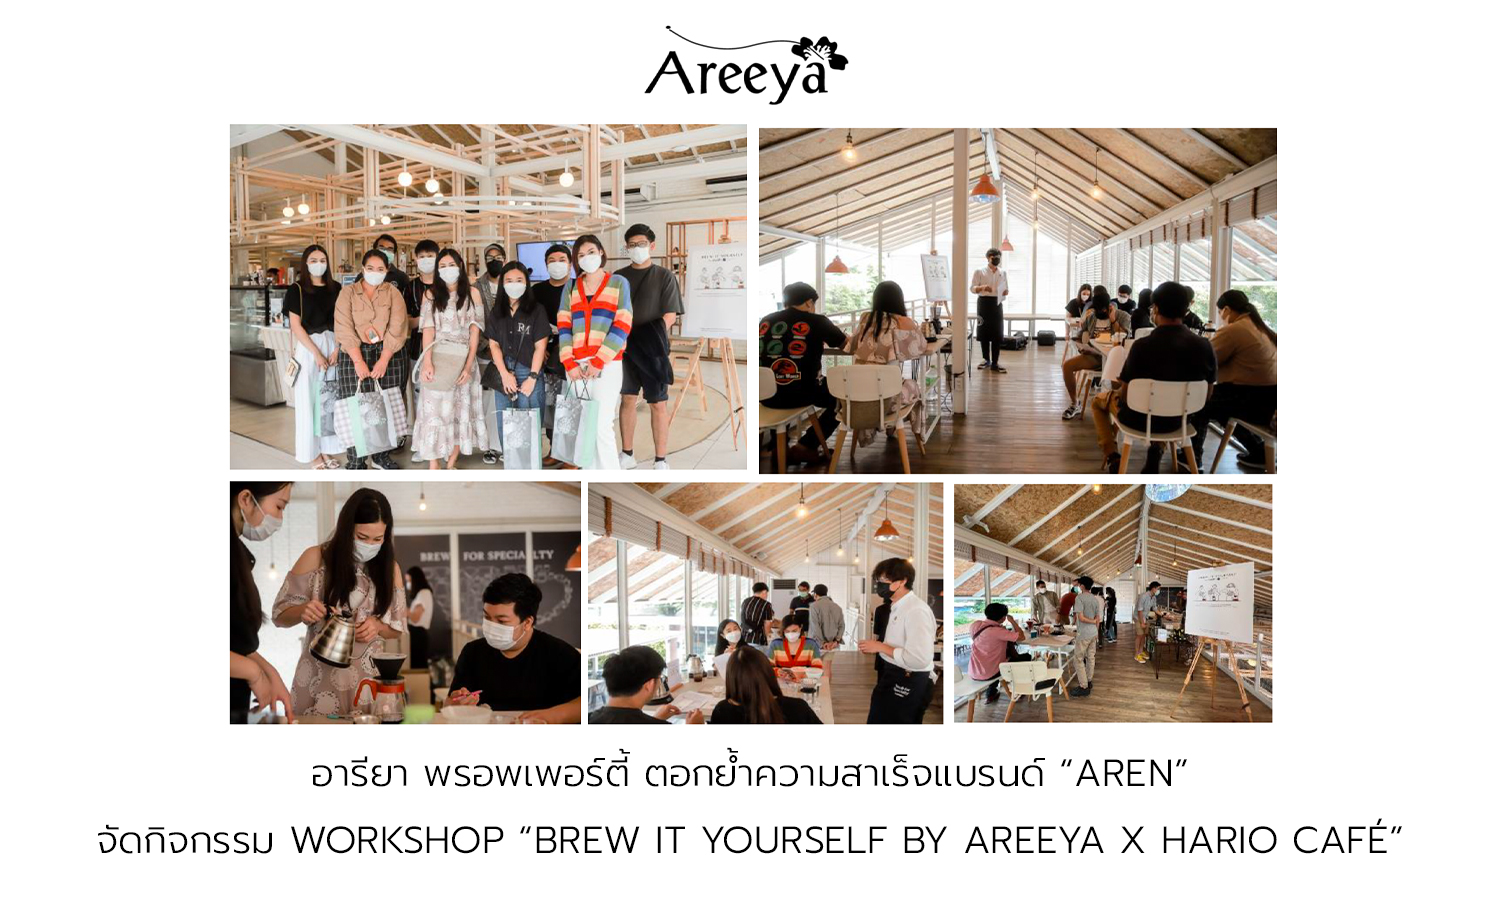 อารียา พรอพเพอร์ตี้ ตอกย้ำความสาเร็จแบรนด์ “AREN” จัดกิจกรรม Workshop “Brew It Yourself by Areeya x Hario Café” บ